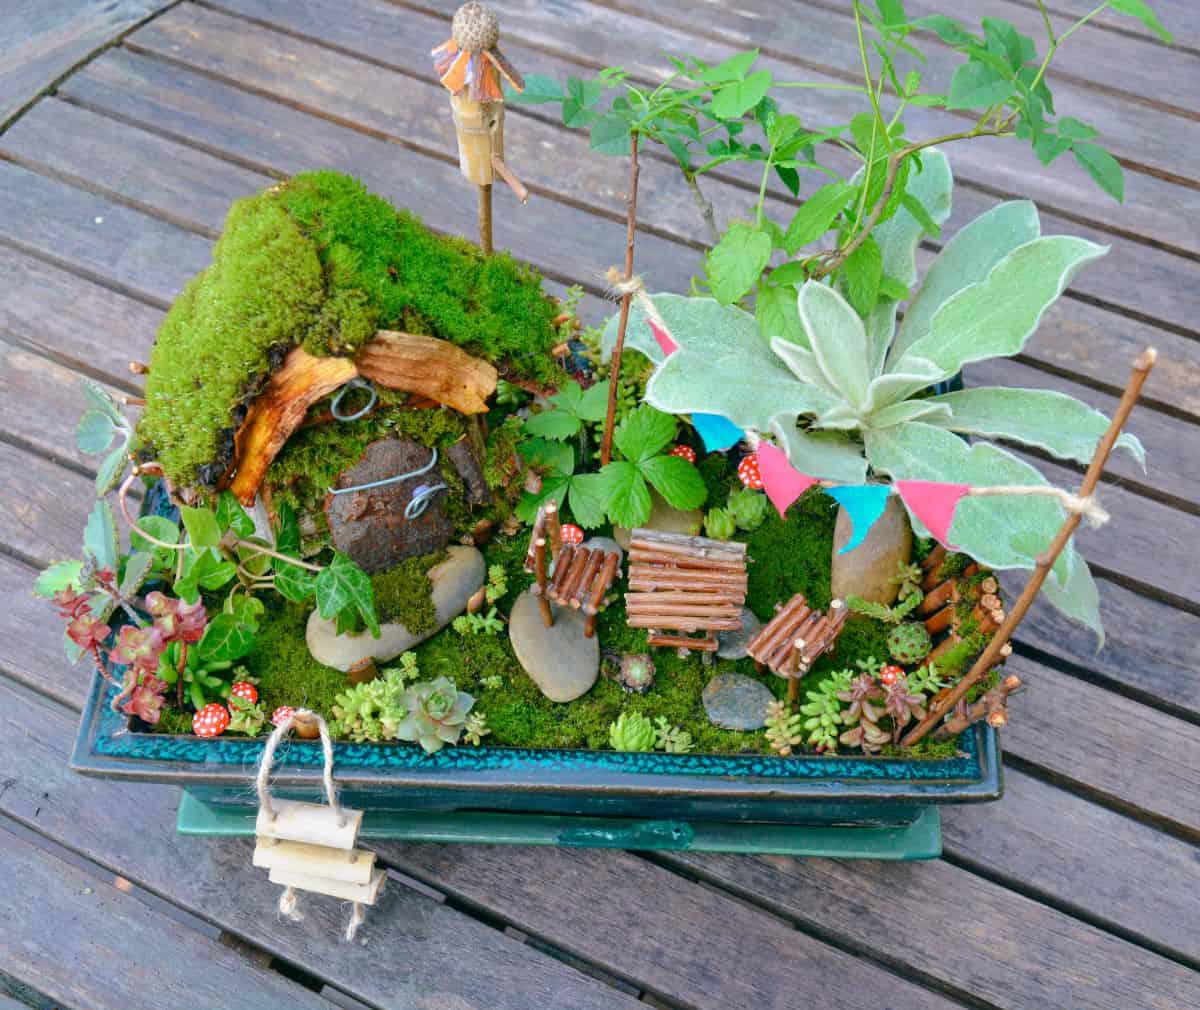 Fairy succulent garden on a wooden deck.